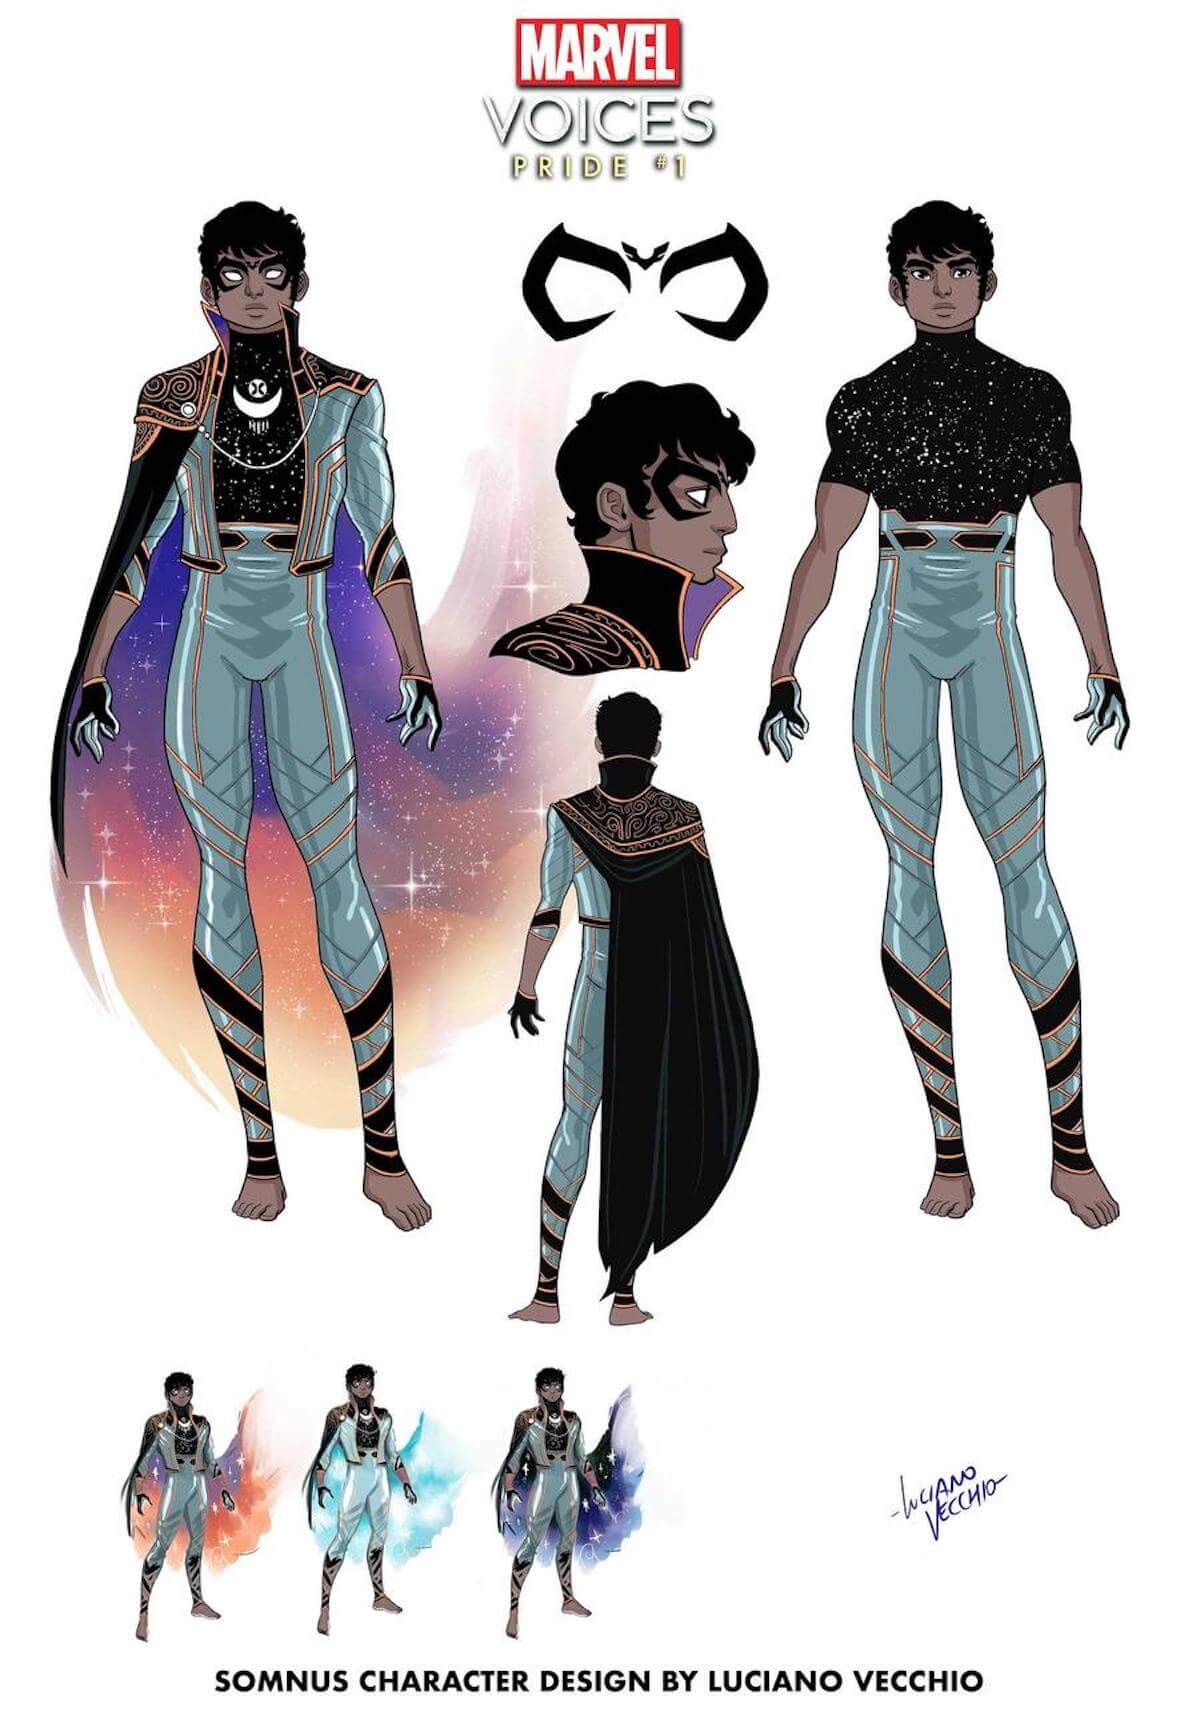 Ecco Somnus, il nuovo supereroe LGBTQ + della Marvel - marvoicespride2021001 somnus character design - Gay.it